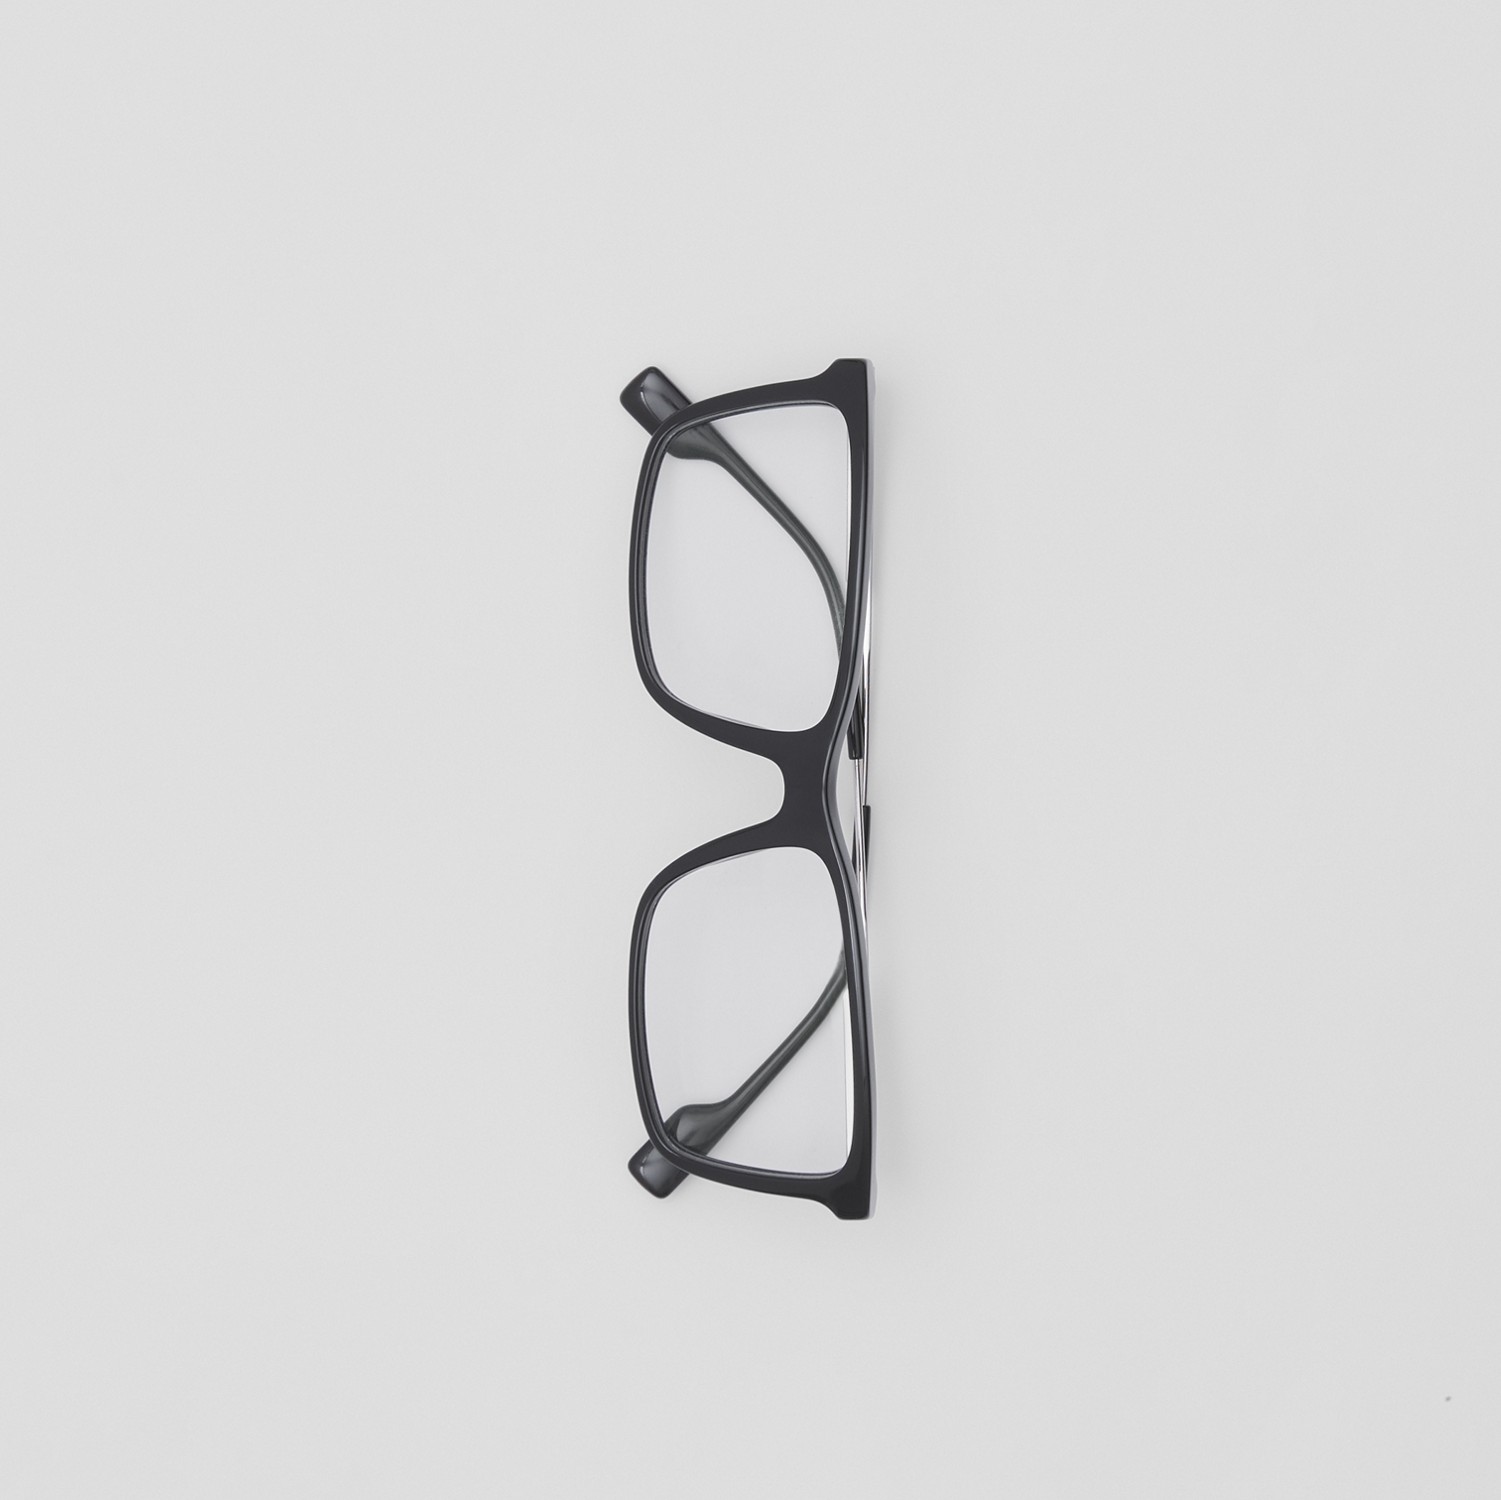 Monture rectangulaire à rayures iconiques pour lunettes de vue